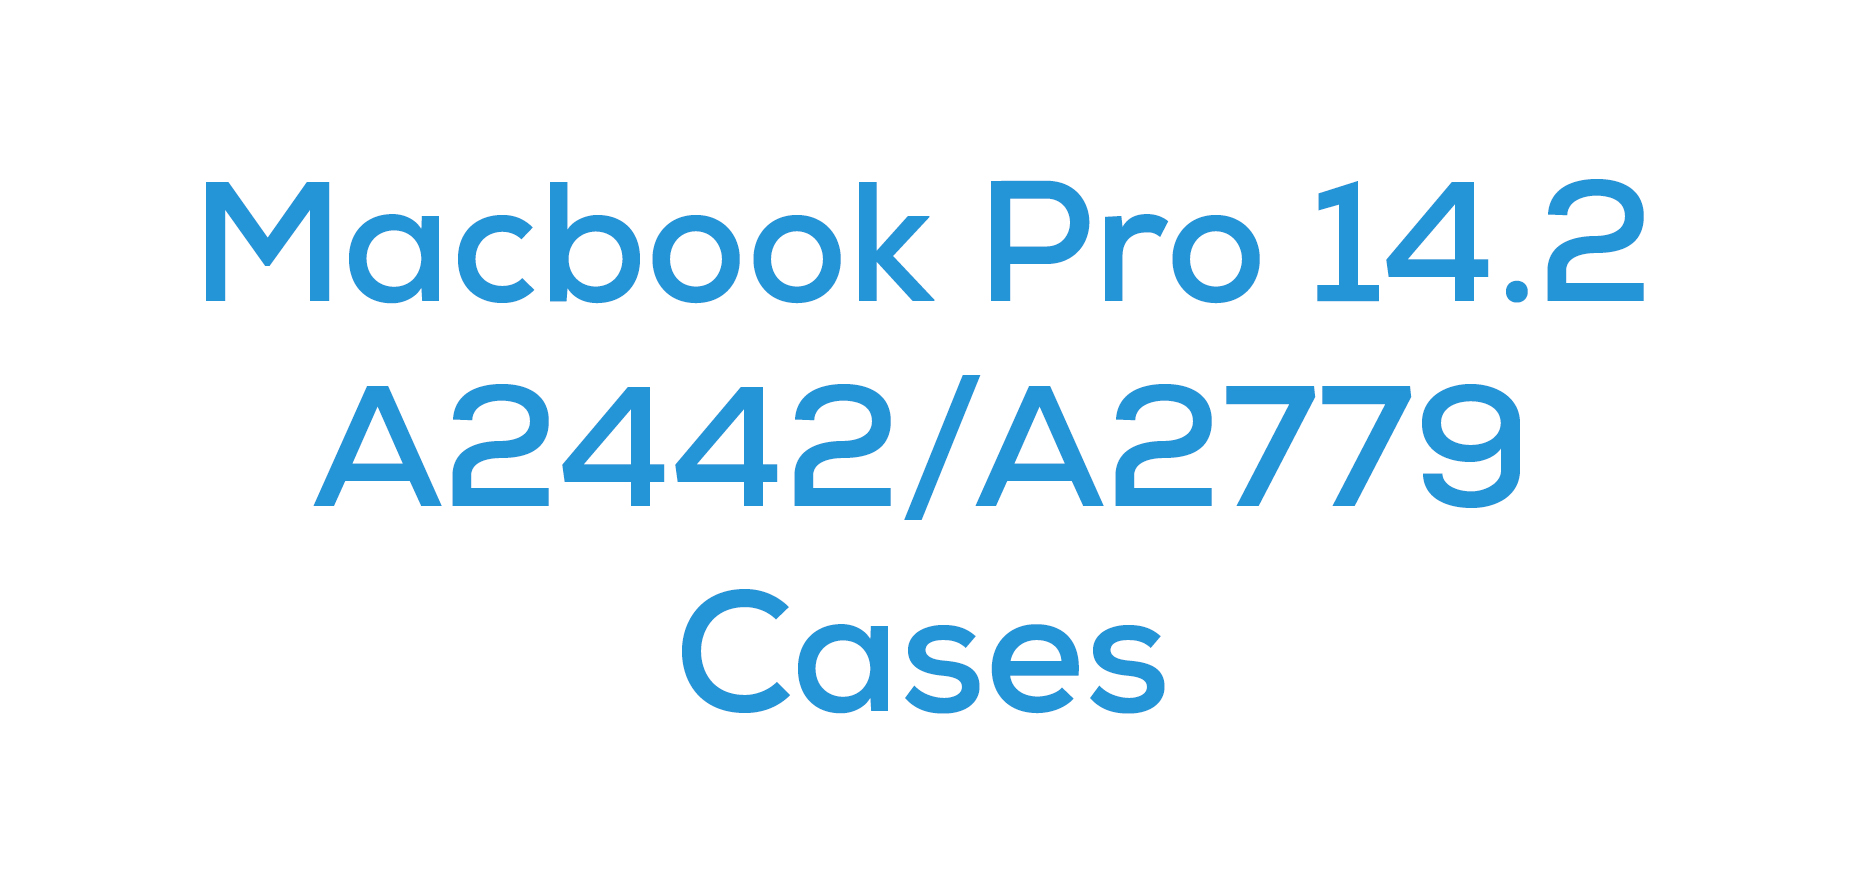 Macbook Pro 14.2 (A2442/A2779)